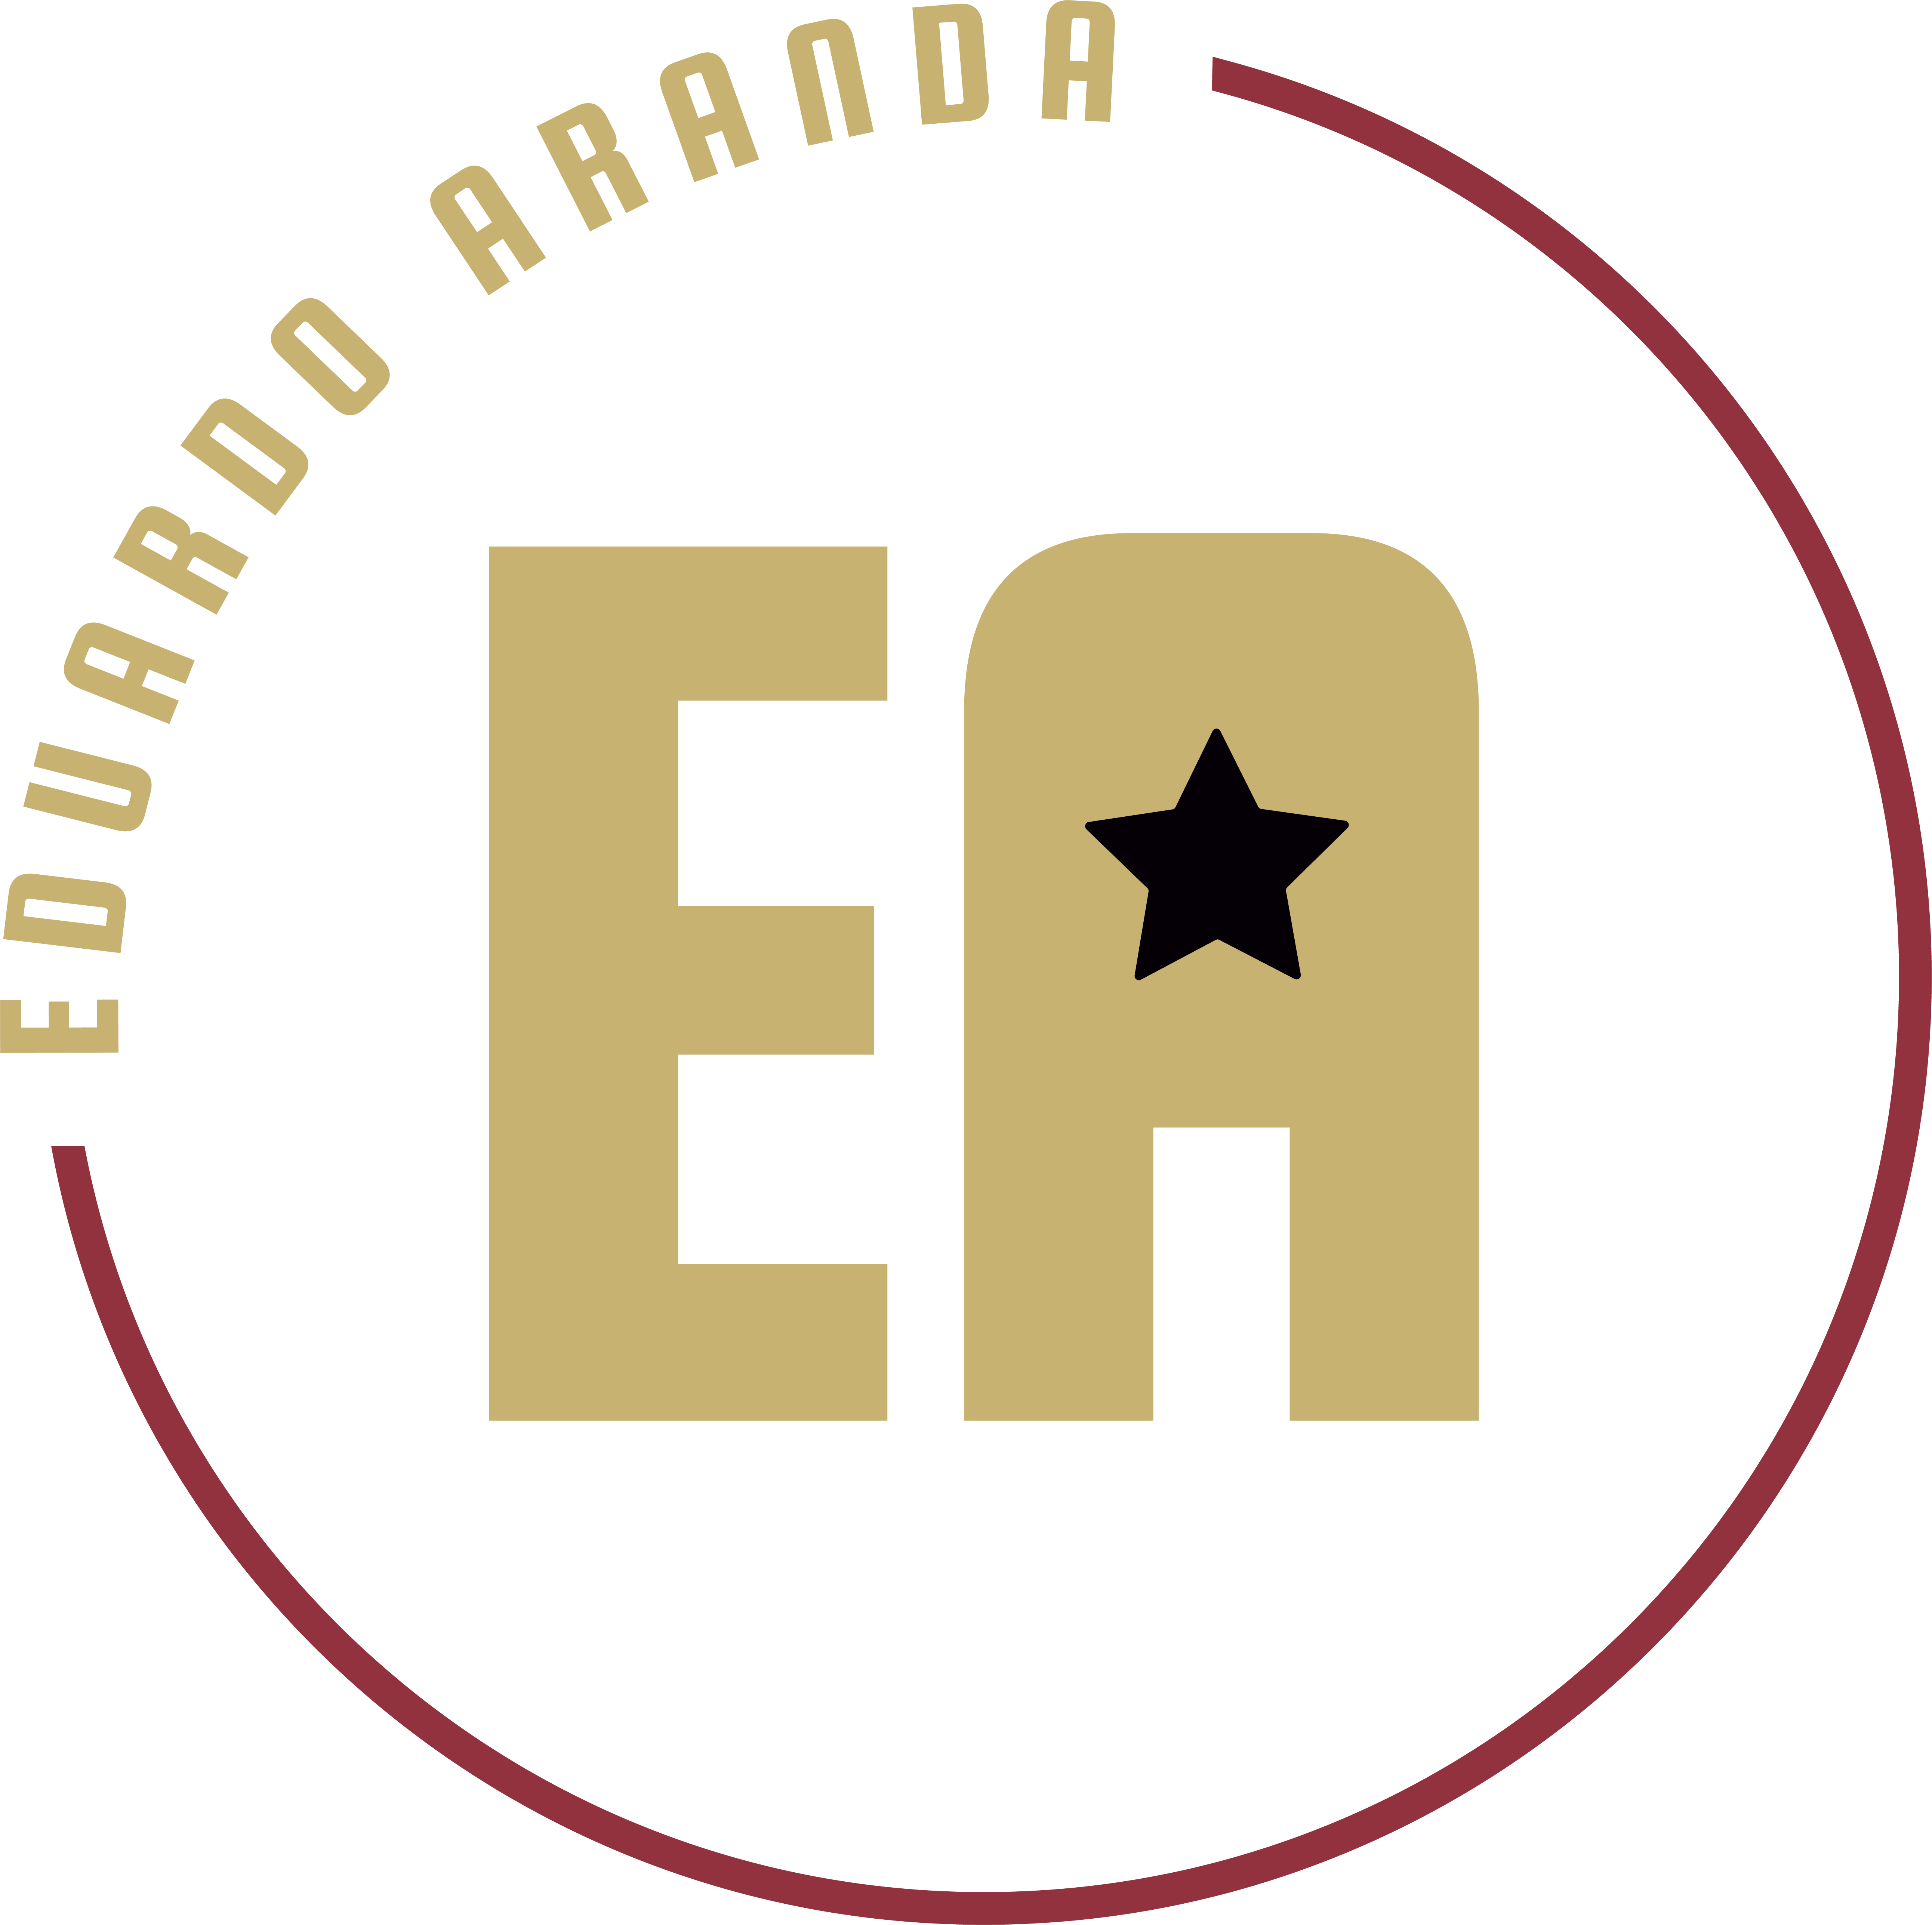 EduardoAranda.com